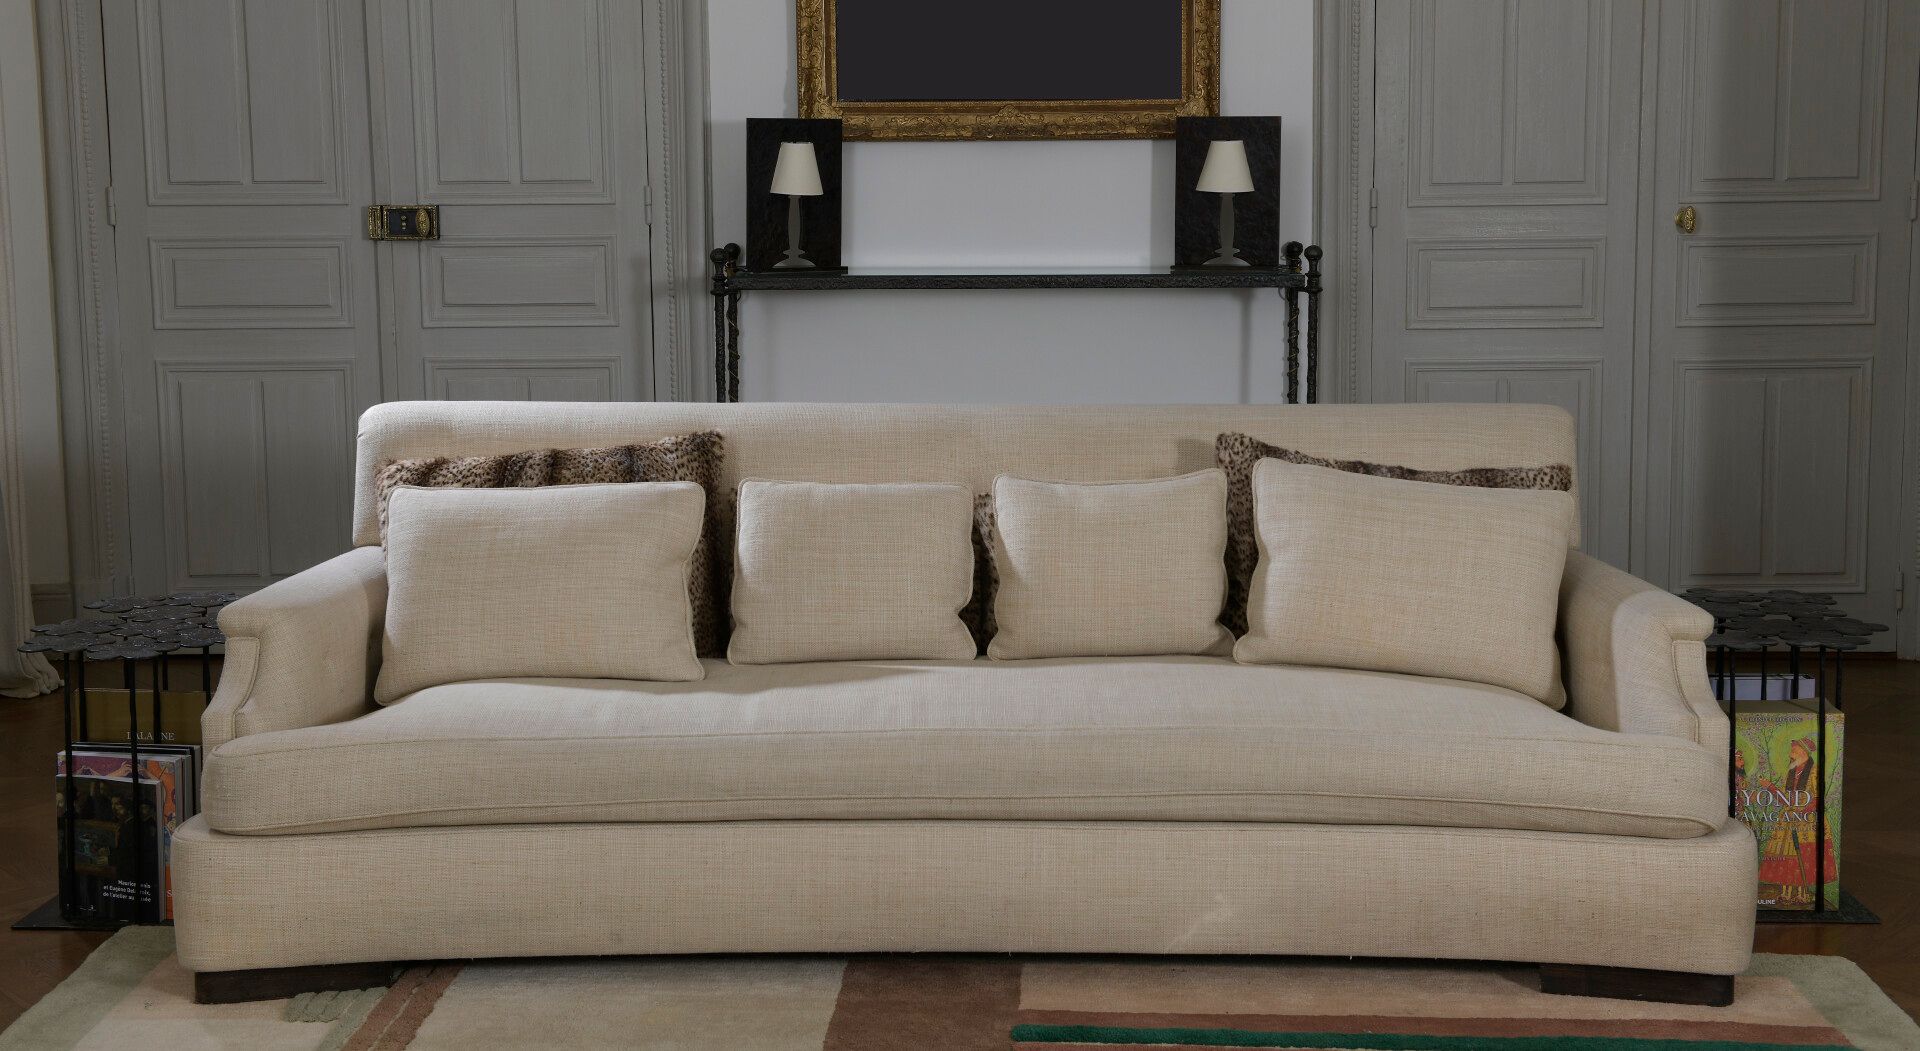 Null 耶和华之家

米色面料的沙发

前面有轻微的弯曲。带凹槽的扶手。

有八个坐垫，其中四个是用豹皮装饰的。

H.85宽236深116厘米